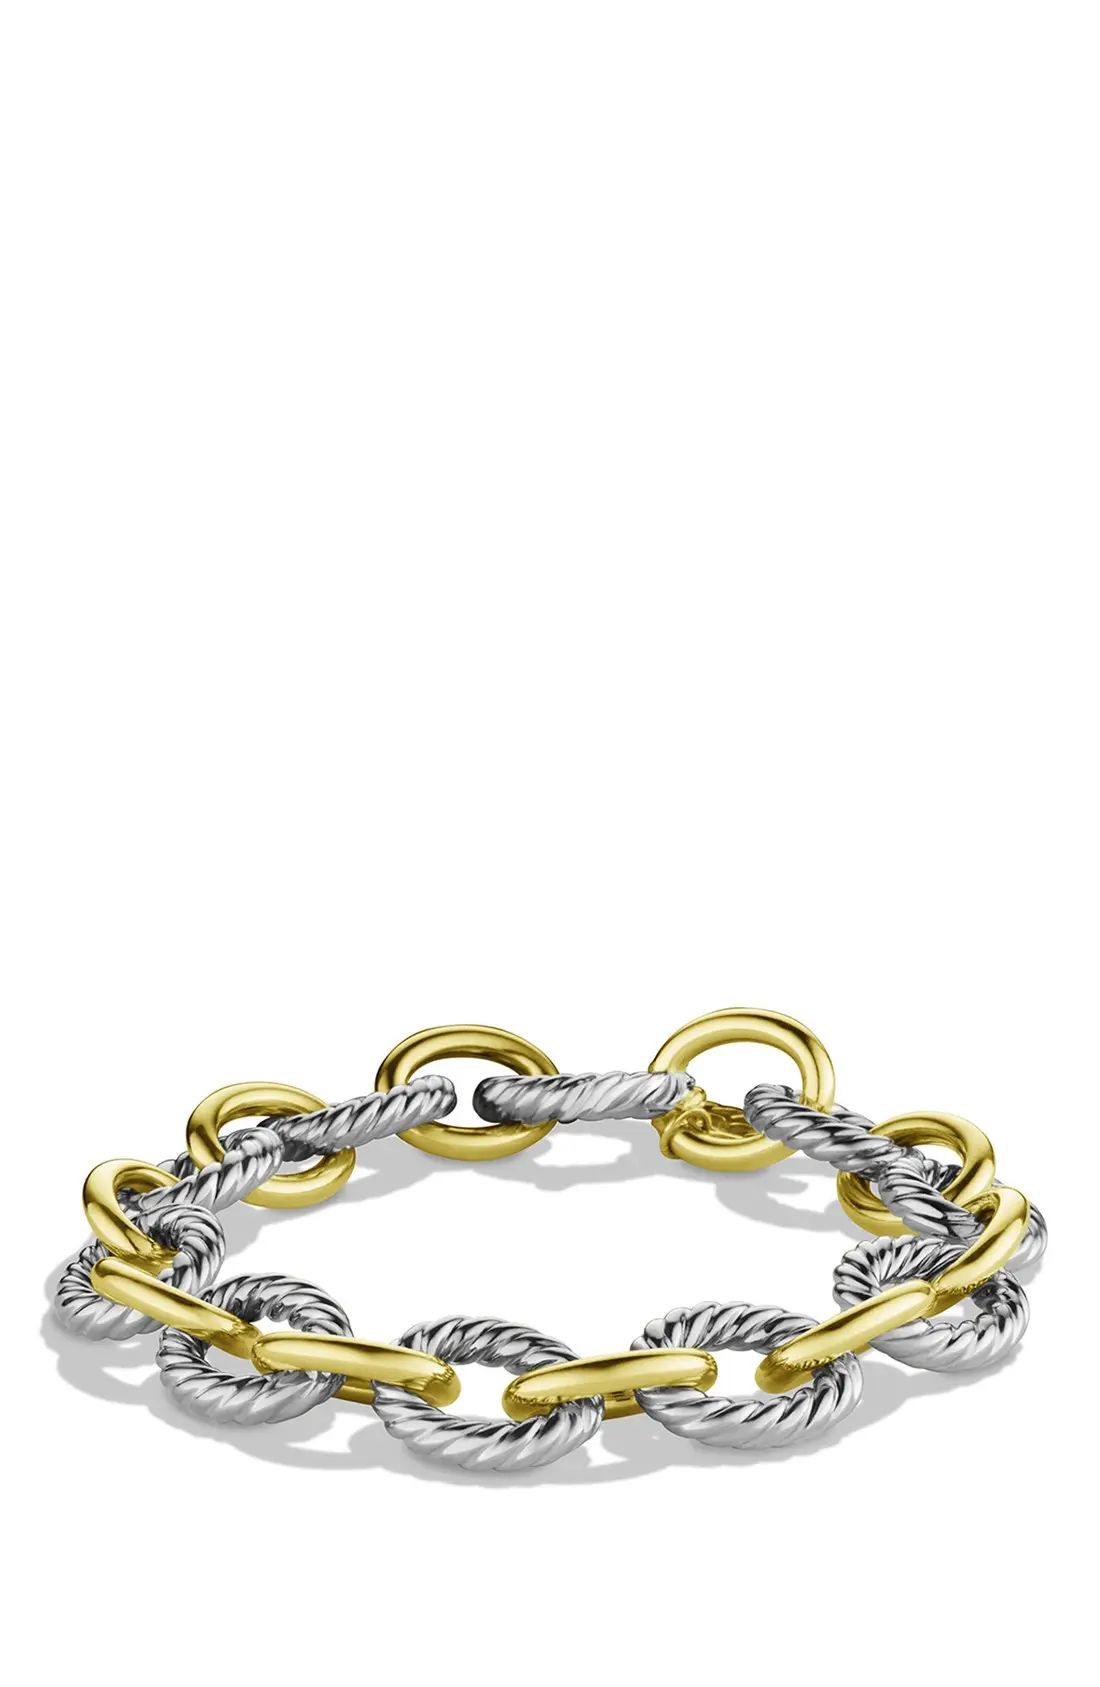 David Yurman 'Oval' Large Link Bracelet with Gold | Nordstrom